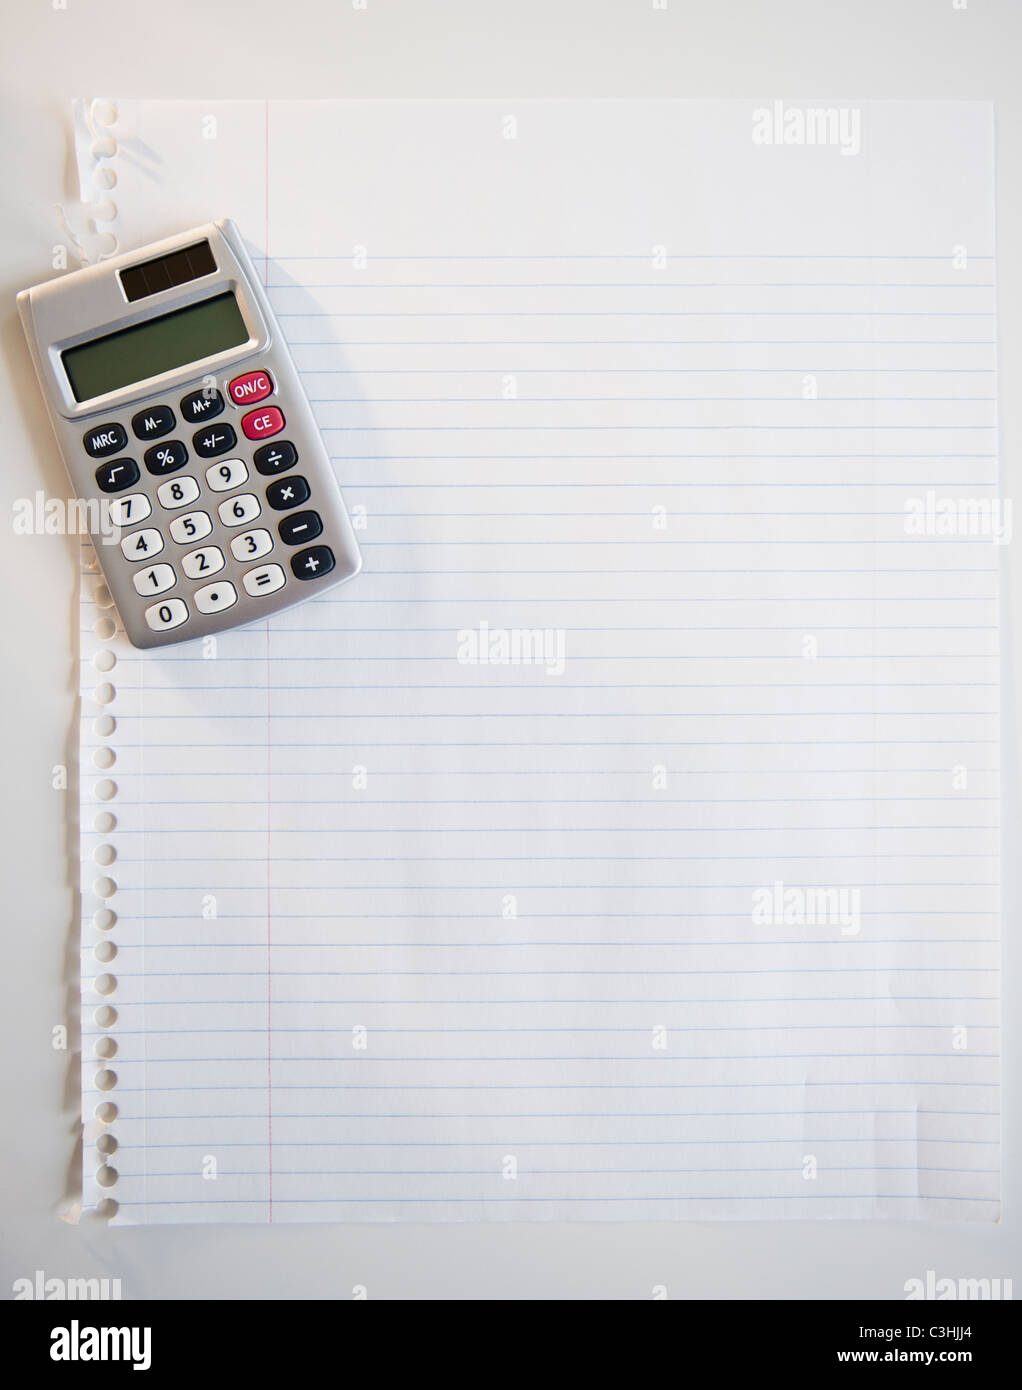 Studio shot of calculator sur feuille de papier Banque D'Images